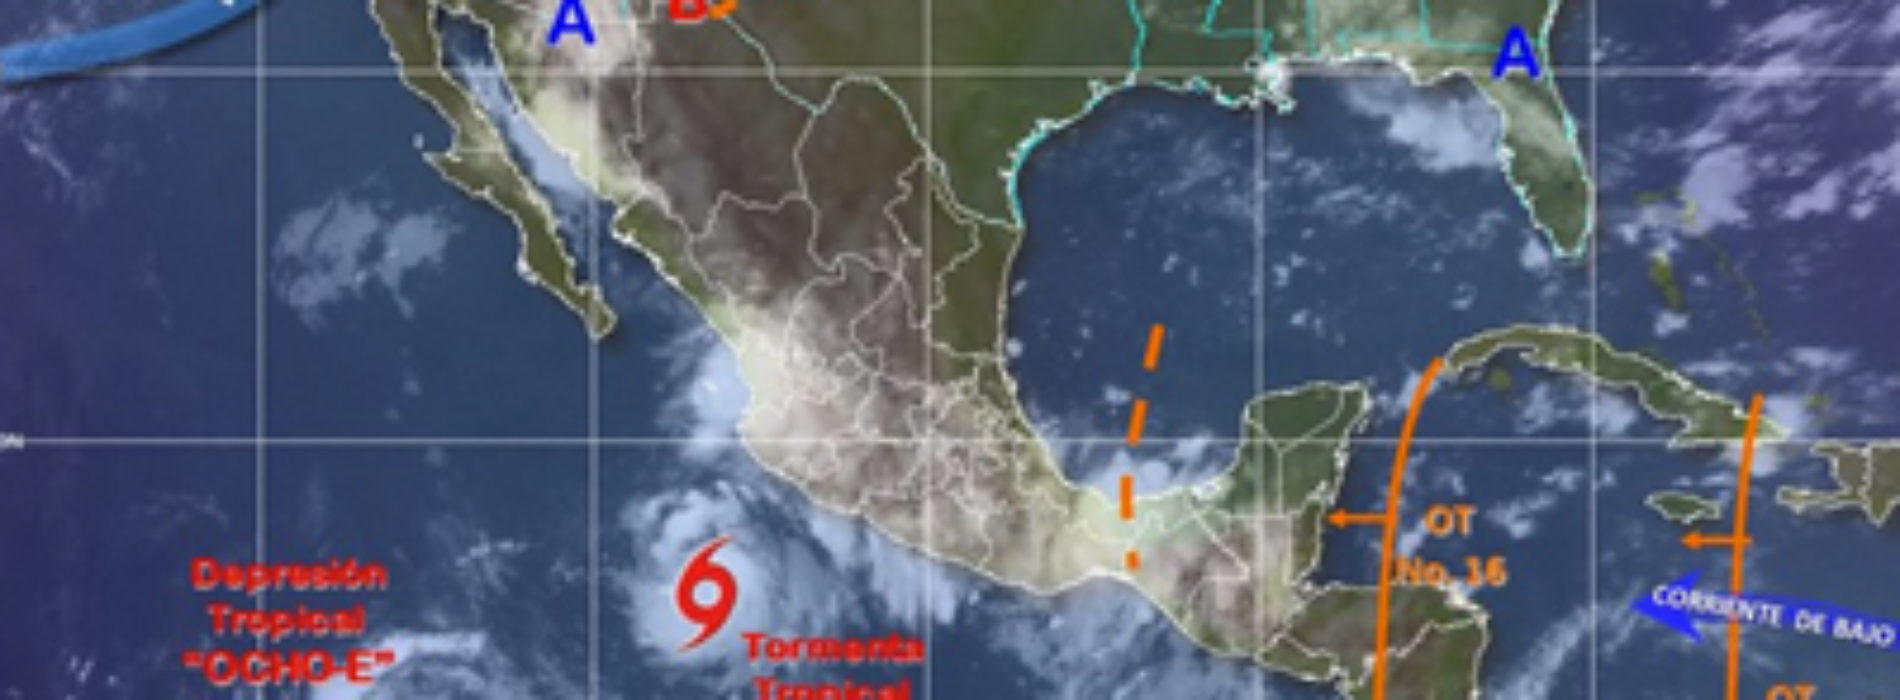 Persistirán intervalos de chubascos con tormentas puntuales muy fuertes en Oaxaca